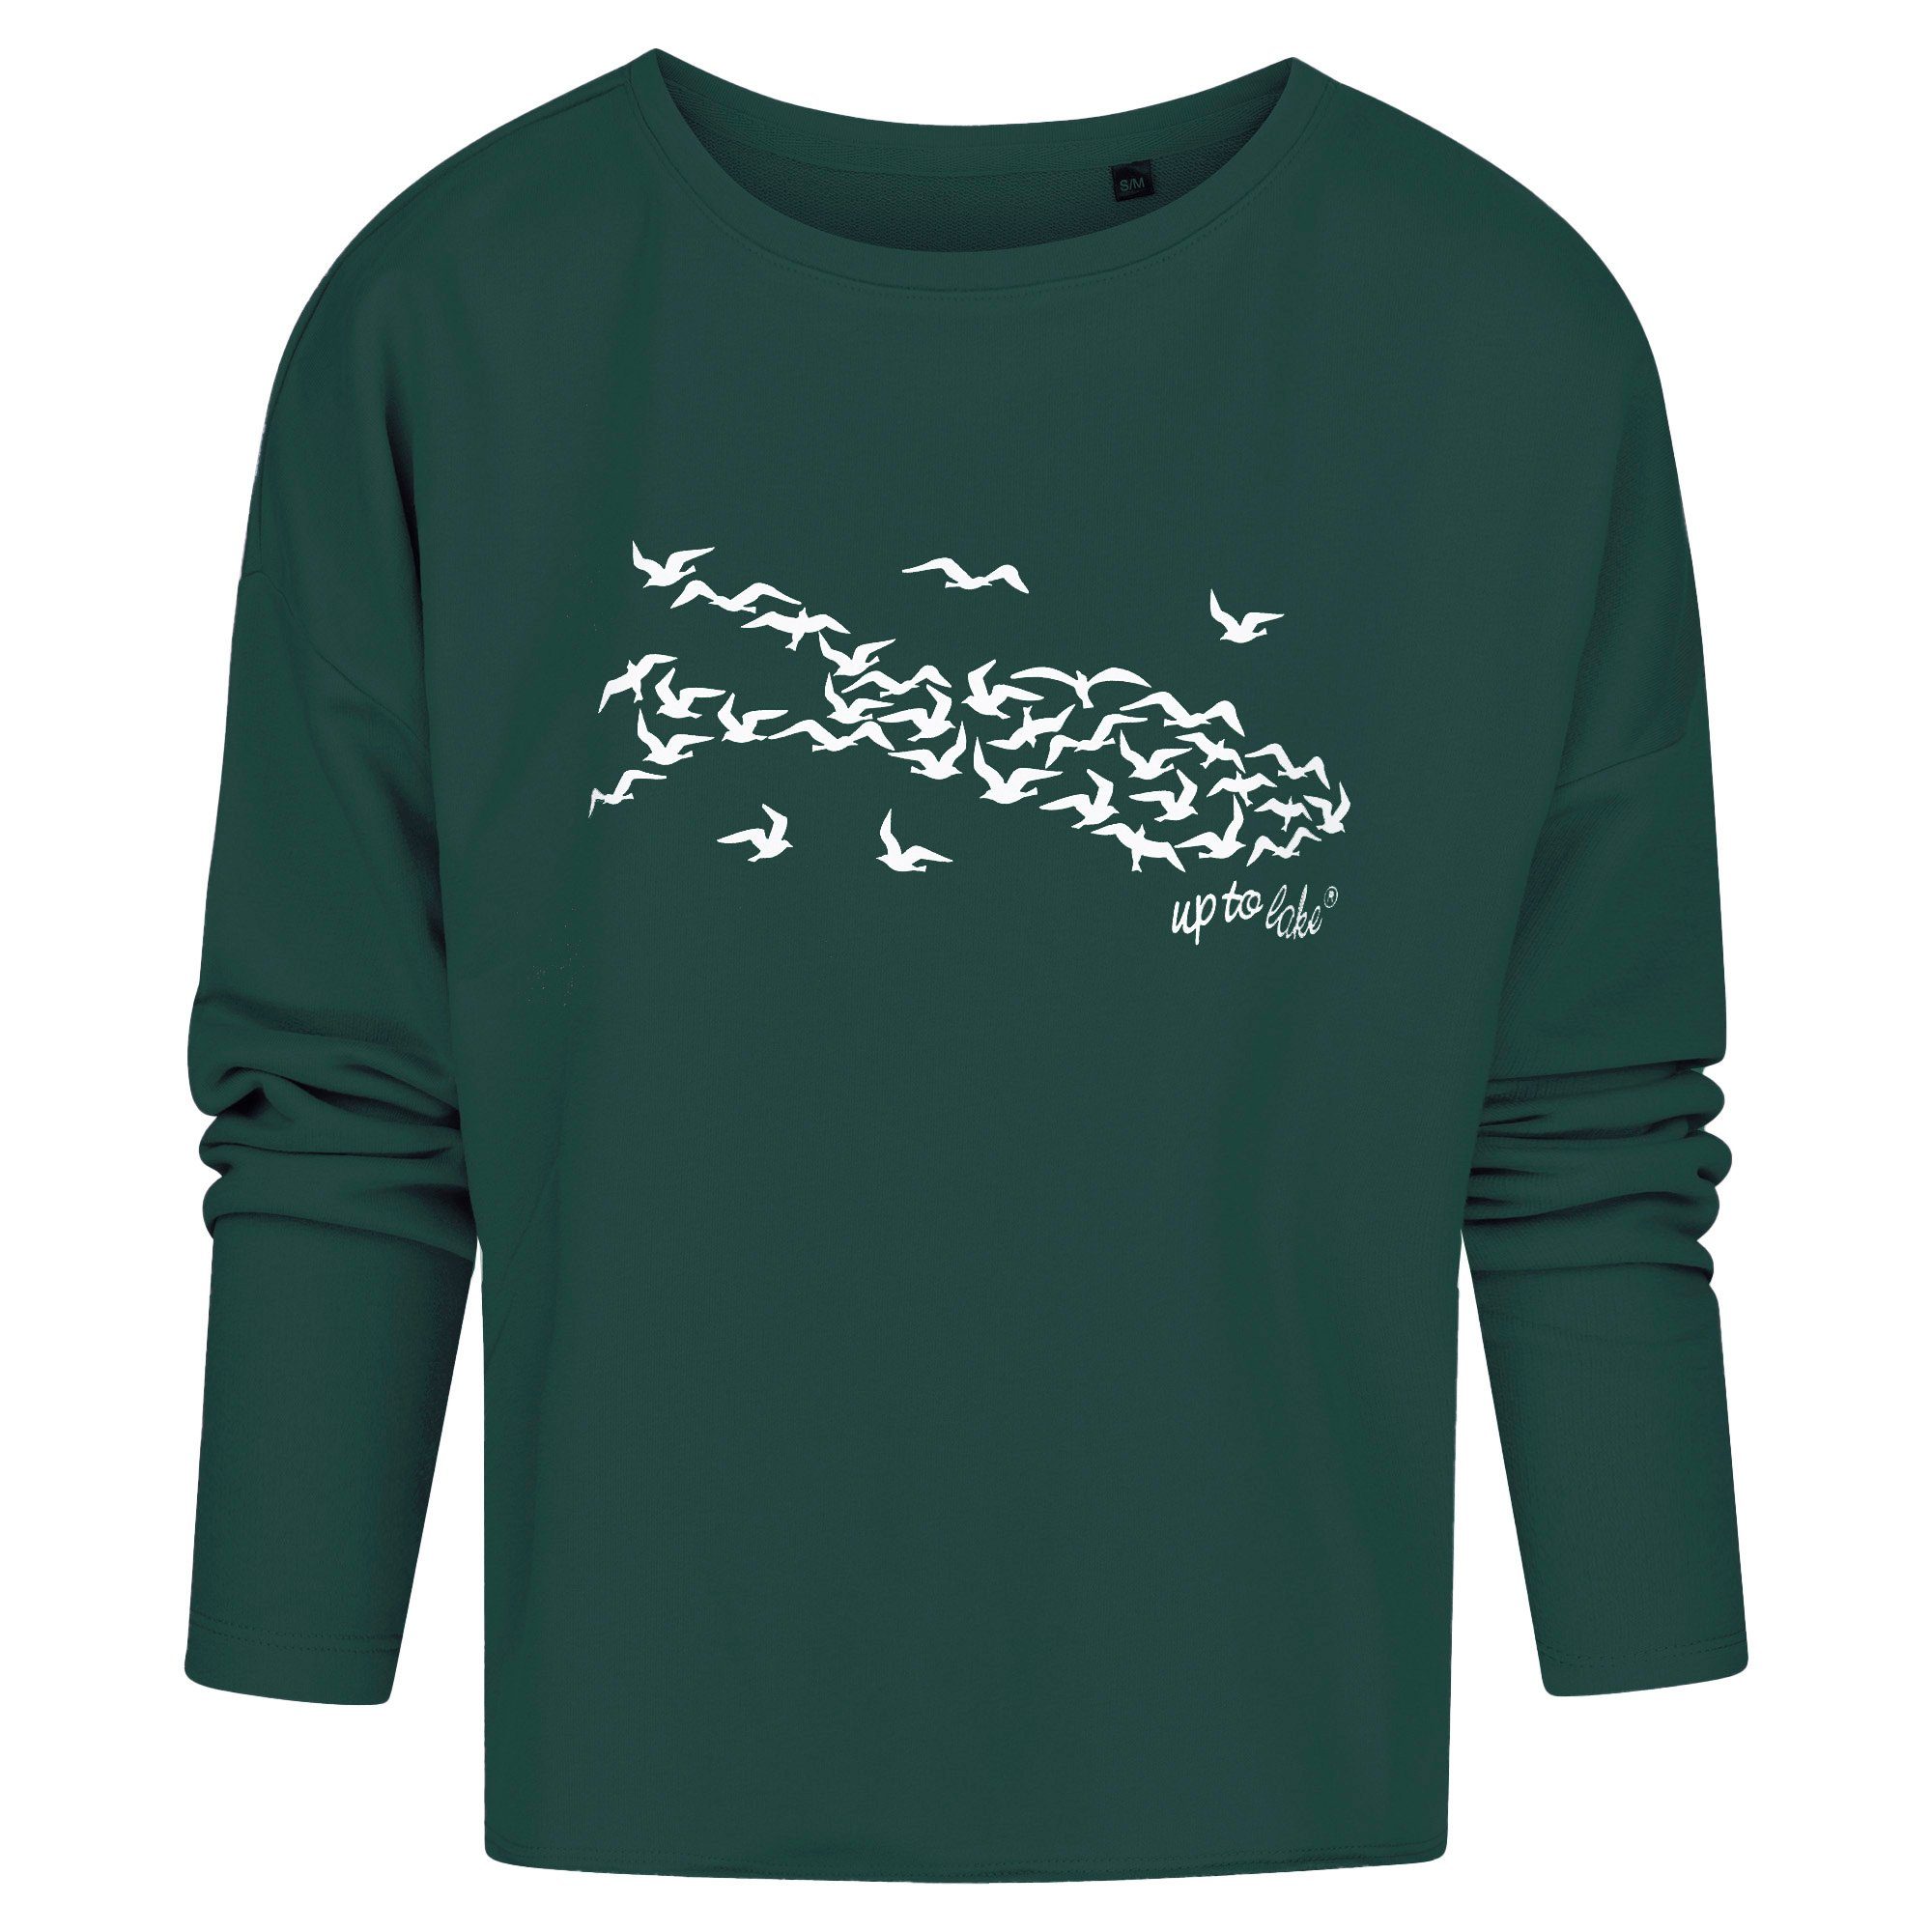 Baumwollstoff mit Design uptolake Grün/Weiß für Sweatshirt "Mövensee-Bodensee" weichem design aus Damen